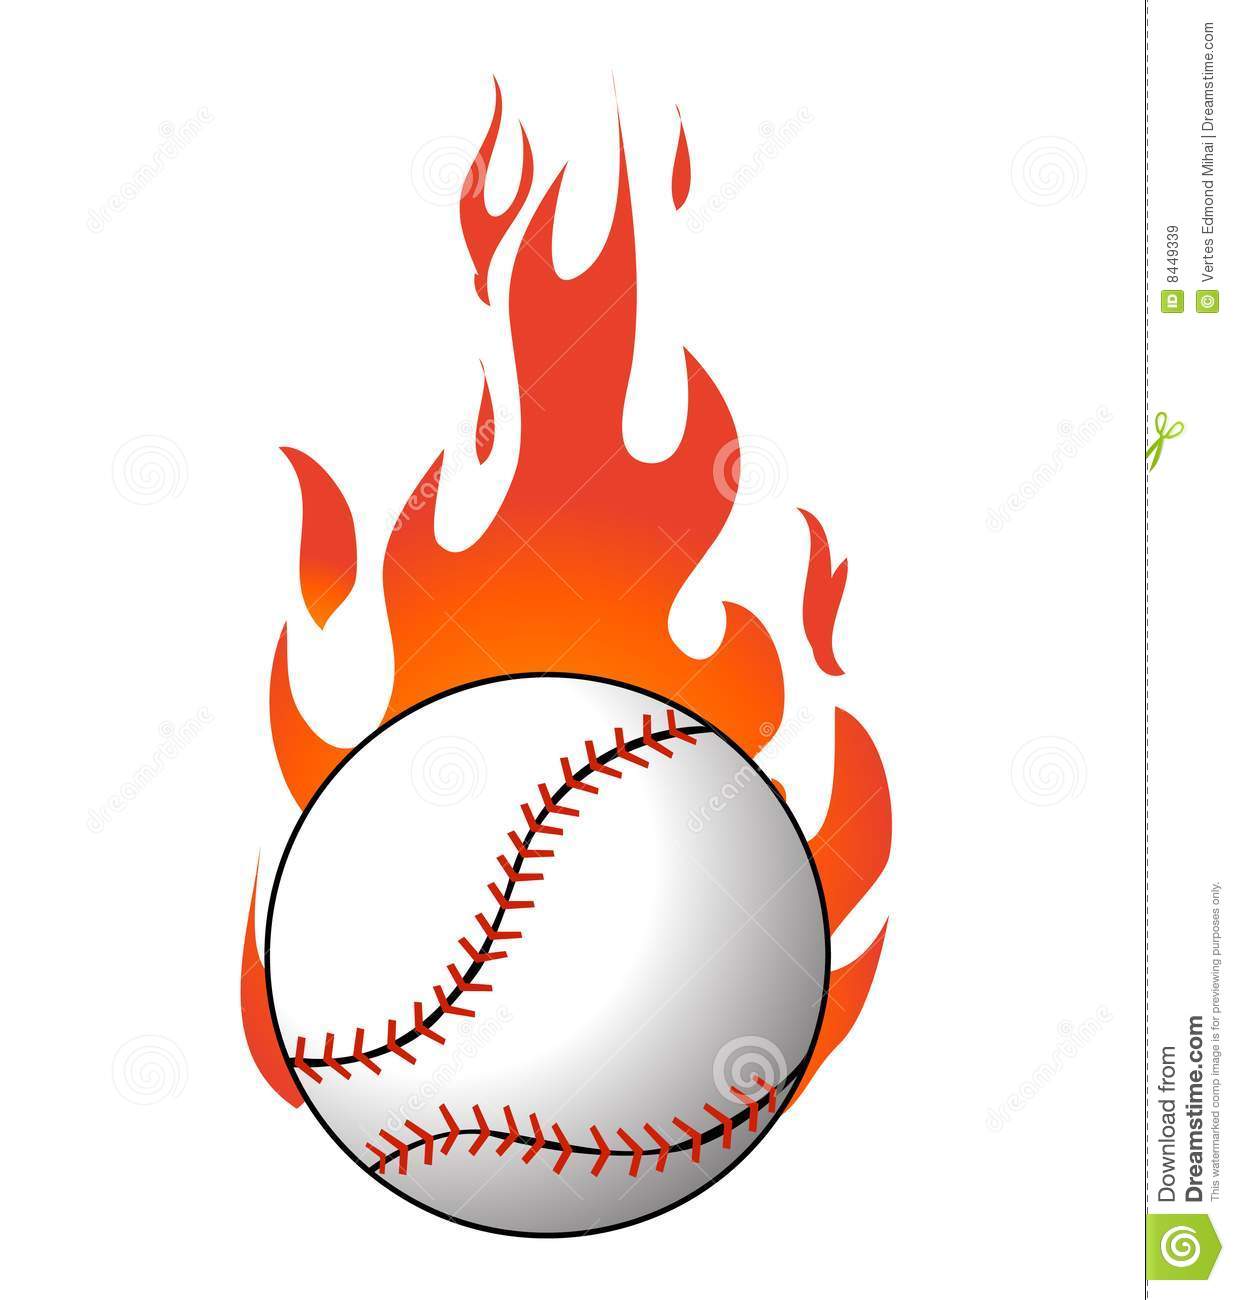 clipart flames baseball